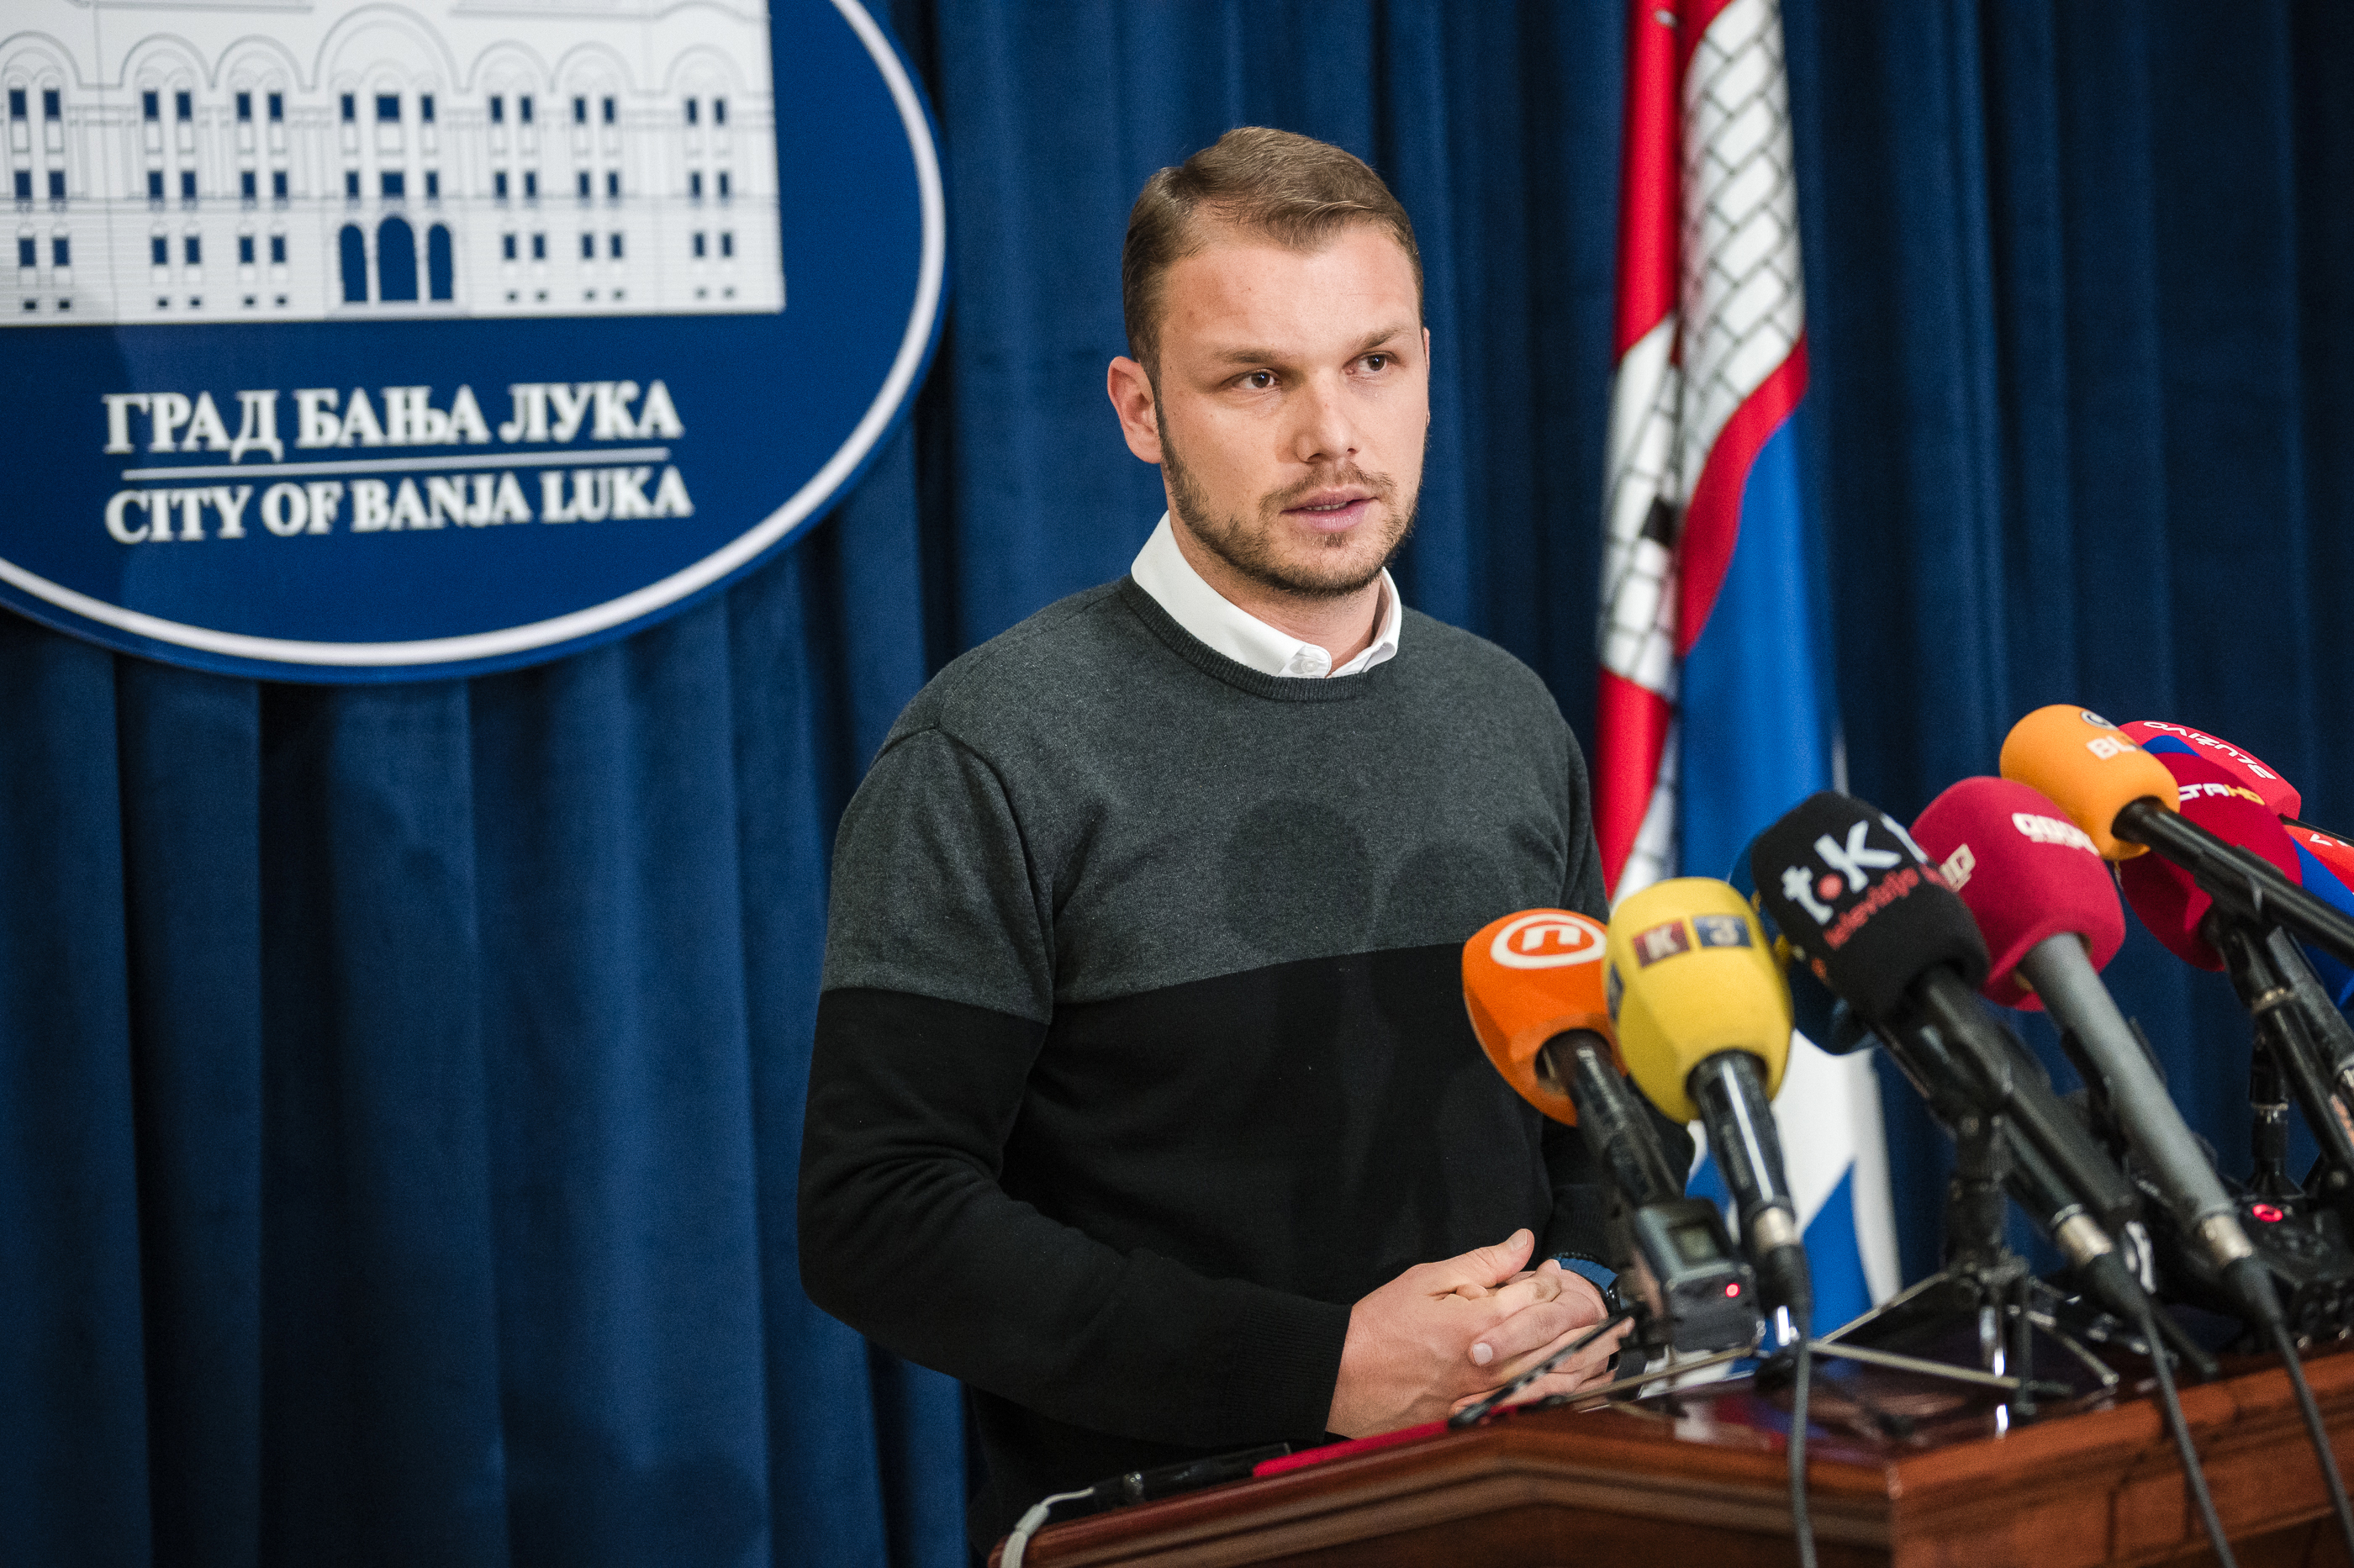 Prošlo 60 dana od neodržavanja redovne sjednice Skupštine Grada, Stanivuković poručio da će je zakazati